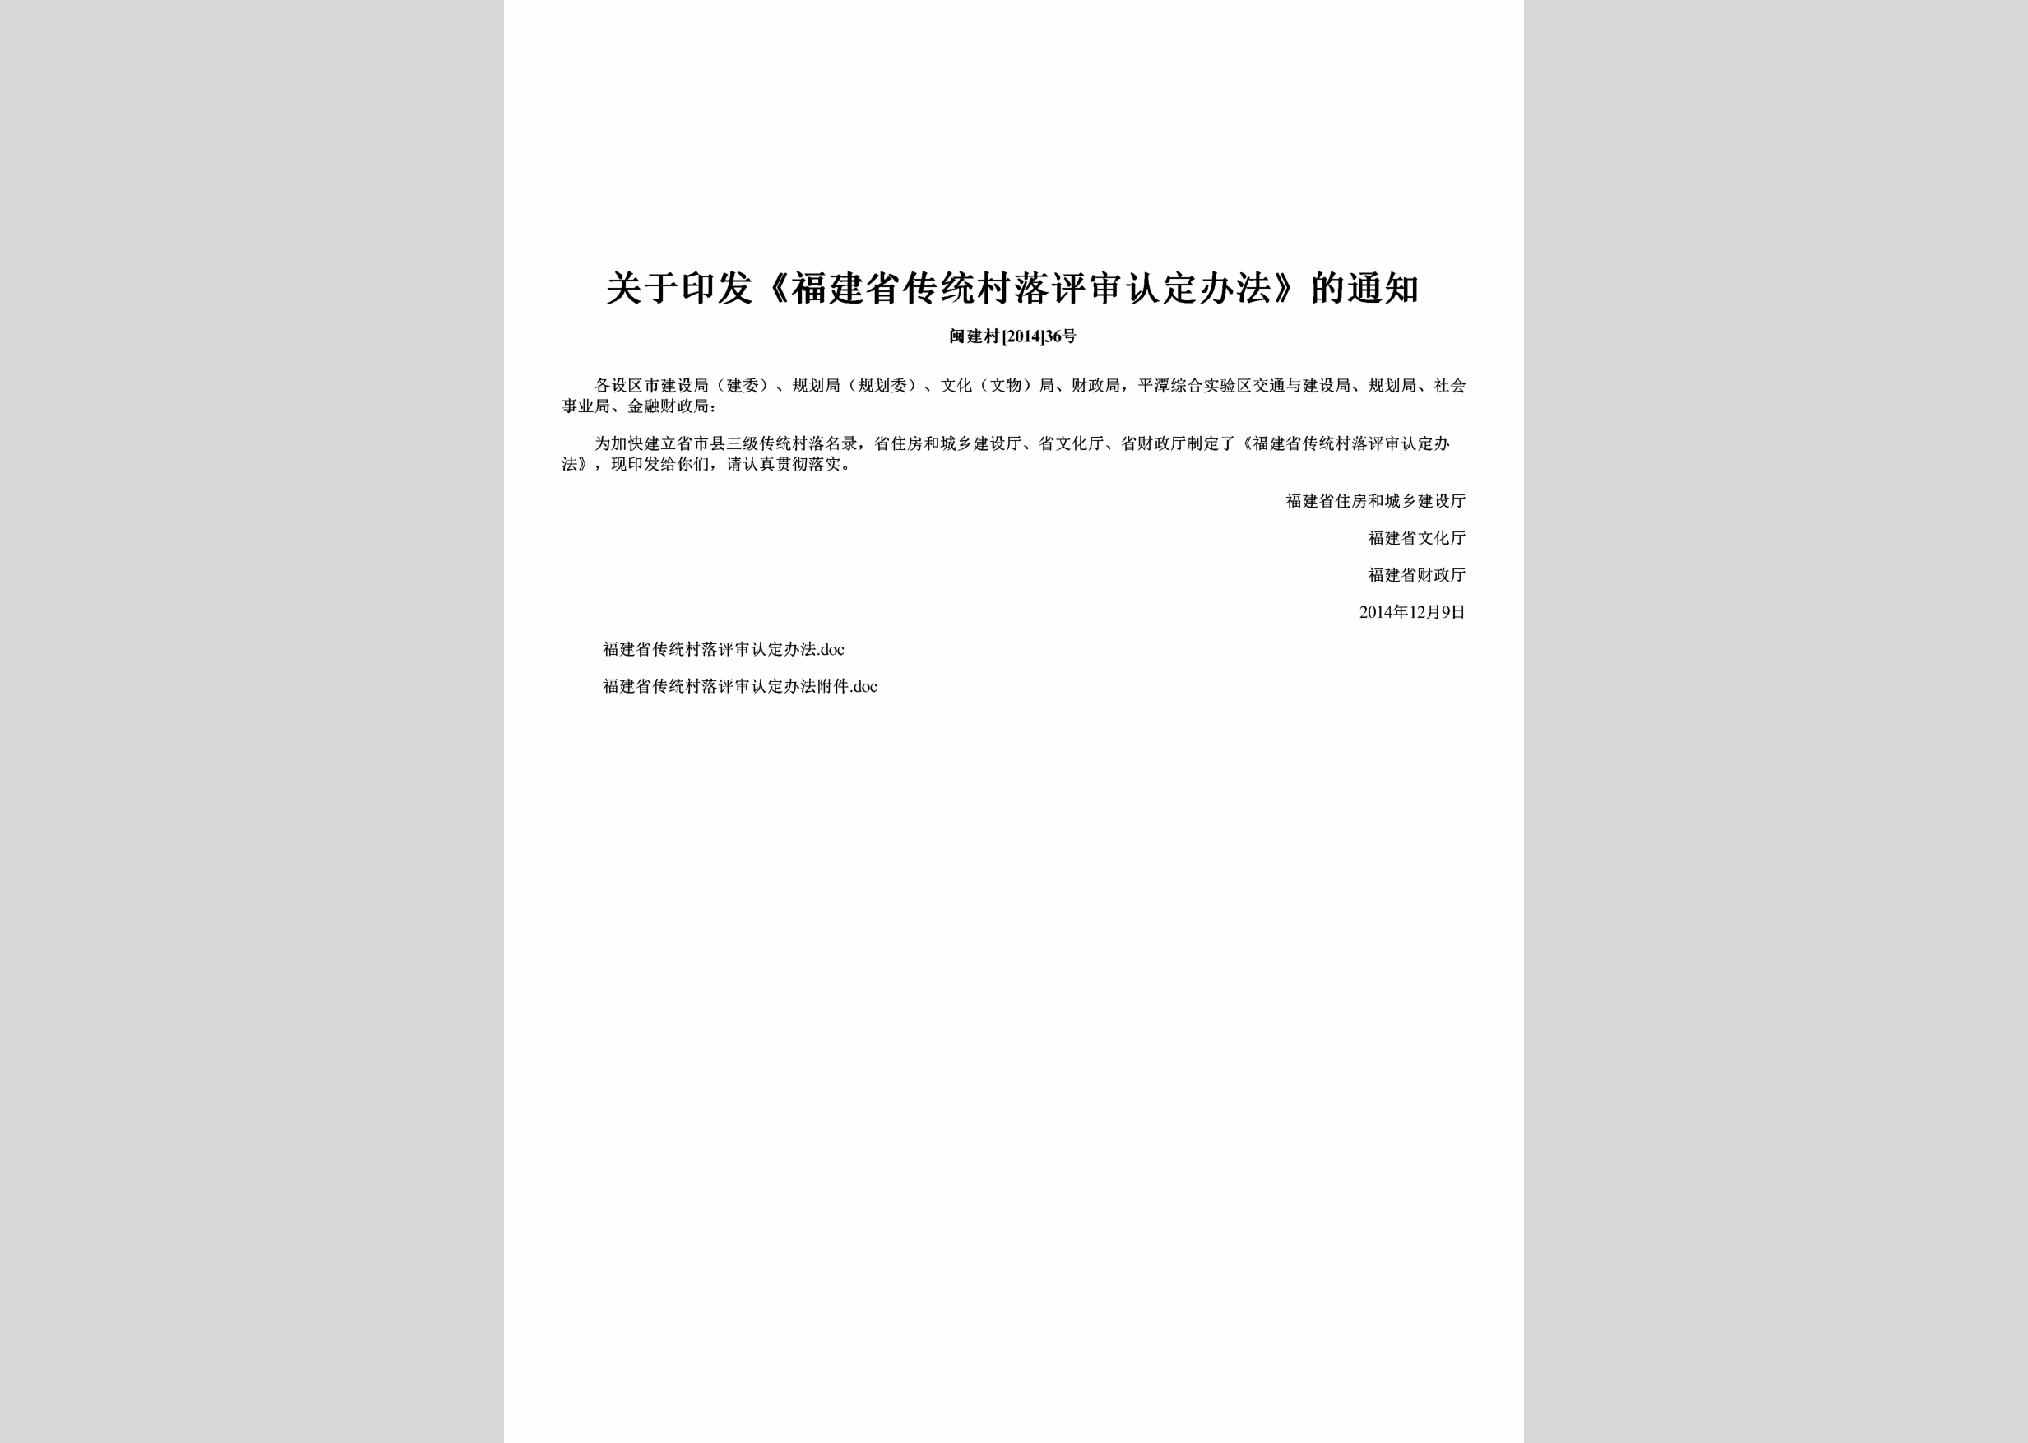 闽建村[2014]36号：关于印发《福建省传统村落评审认定办法》的通知